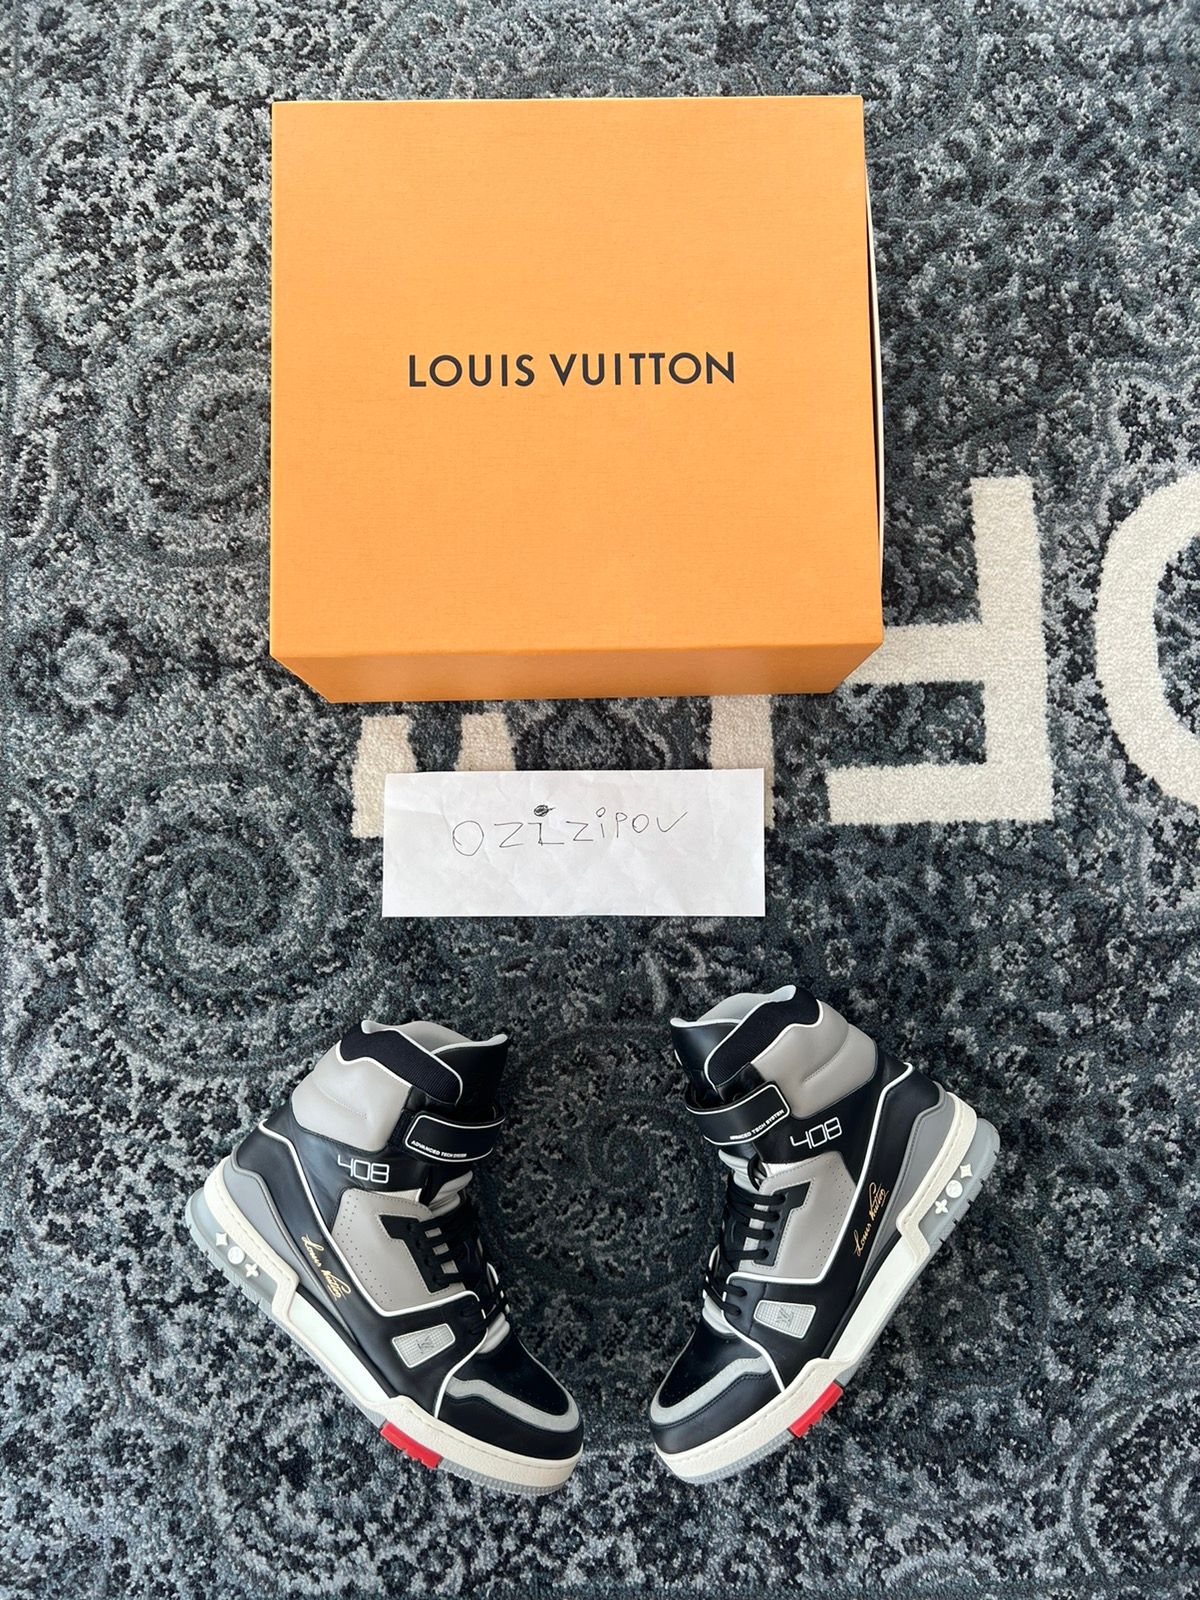 Louis Vuitton Louis Vuitton X Virgil Abloh Sneakers, Grailed